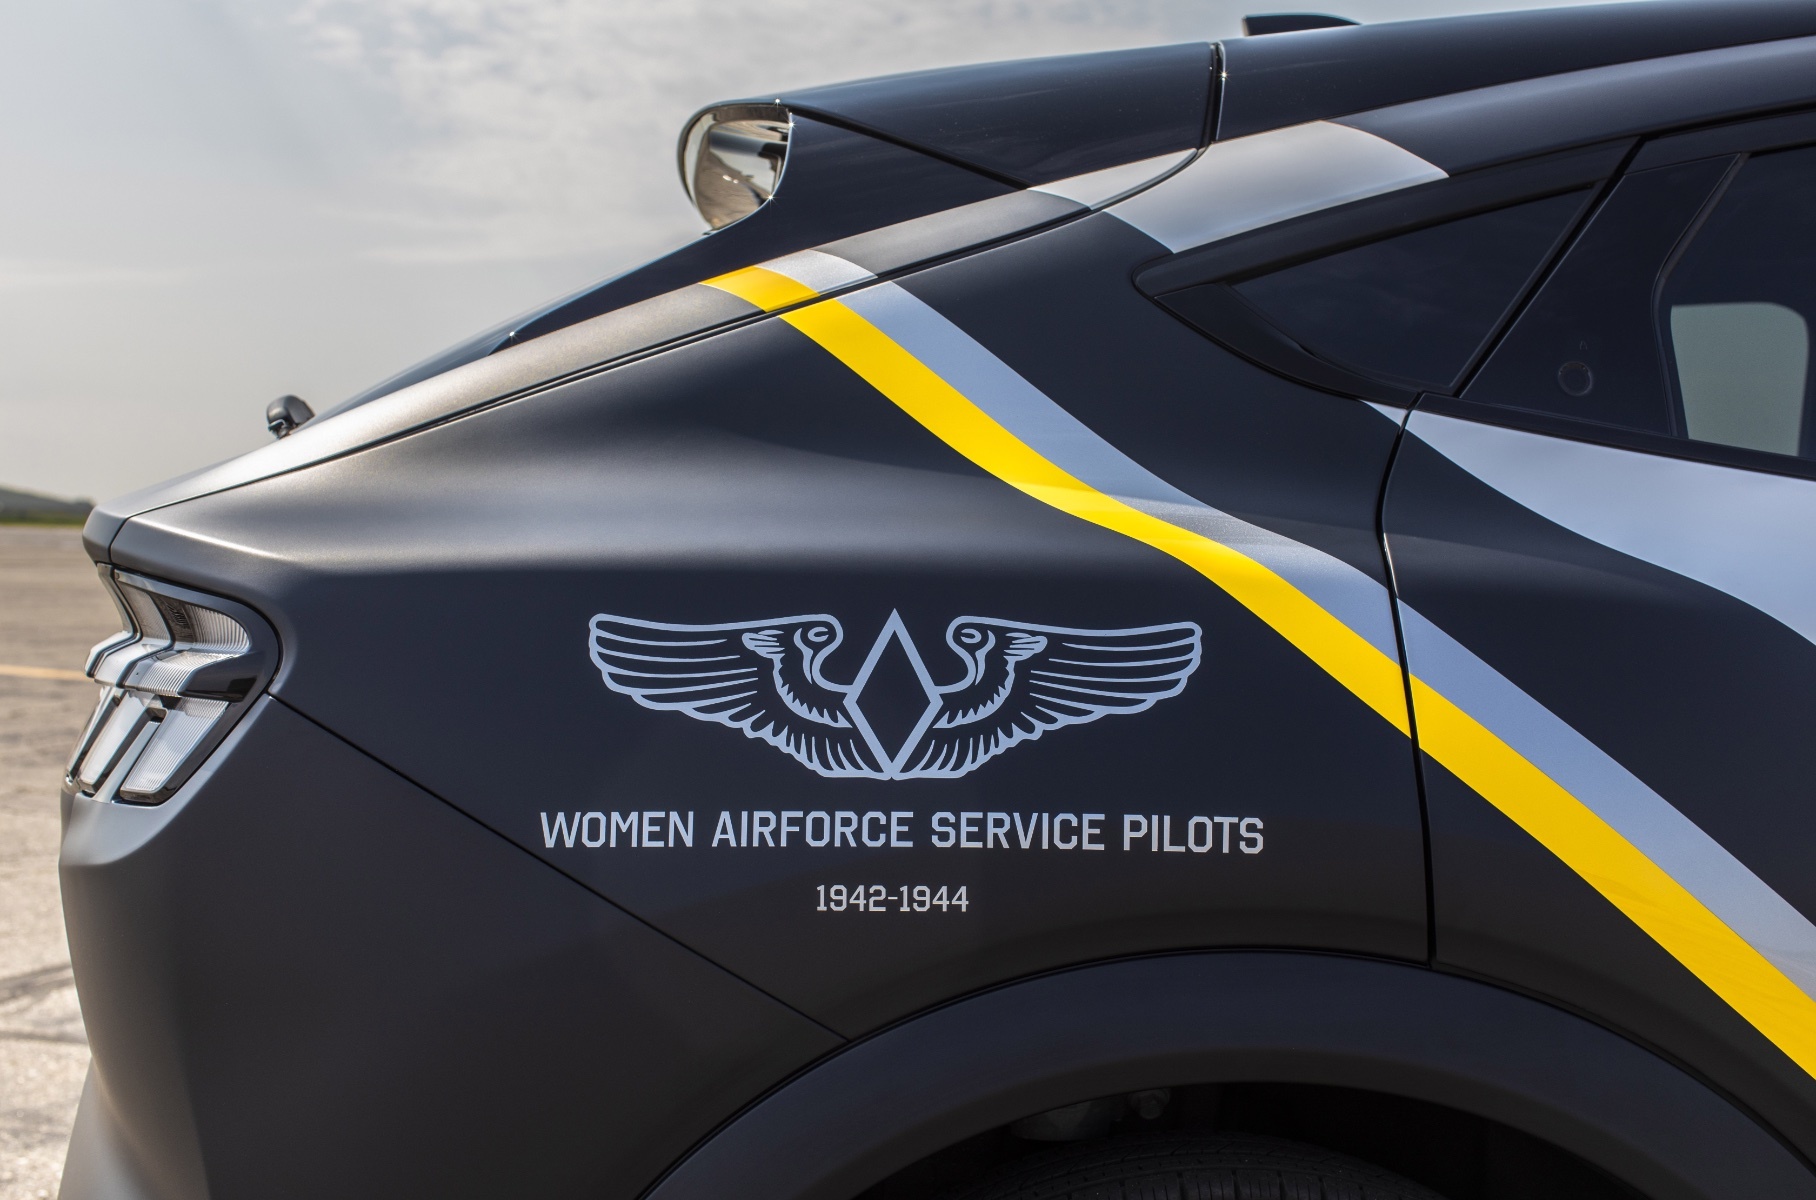 Спецверсию Ford Mustang Mach-E посвятили женщинам-пилотам Второй мировой